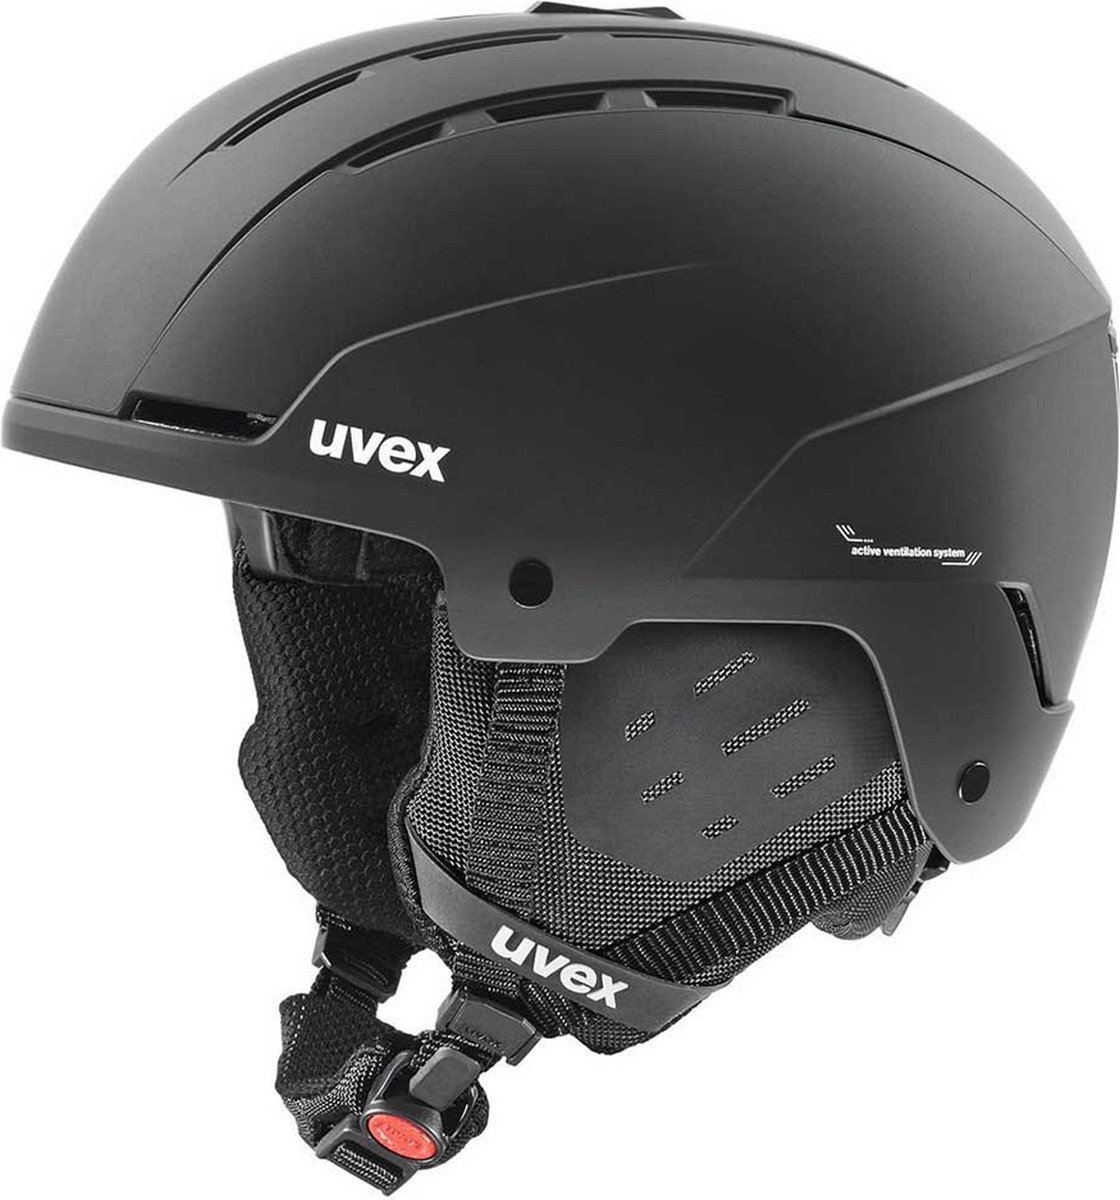 Uvex skihelm Stance Zwart - Maat 54-58